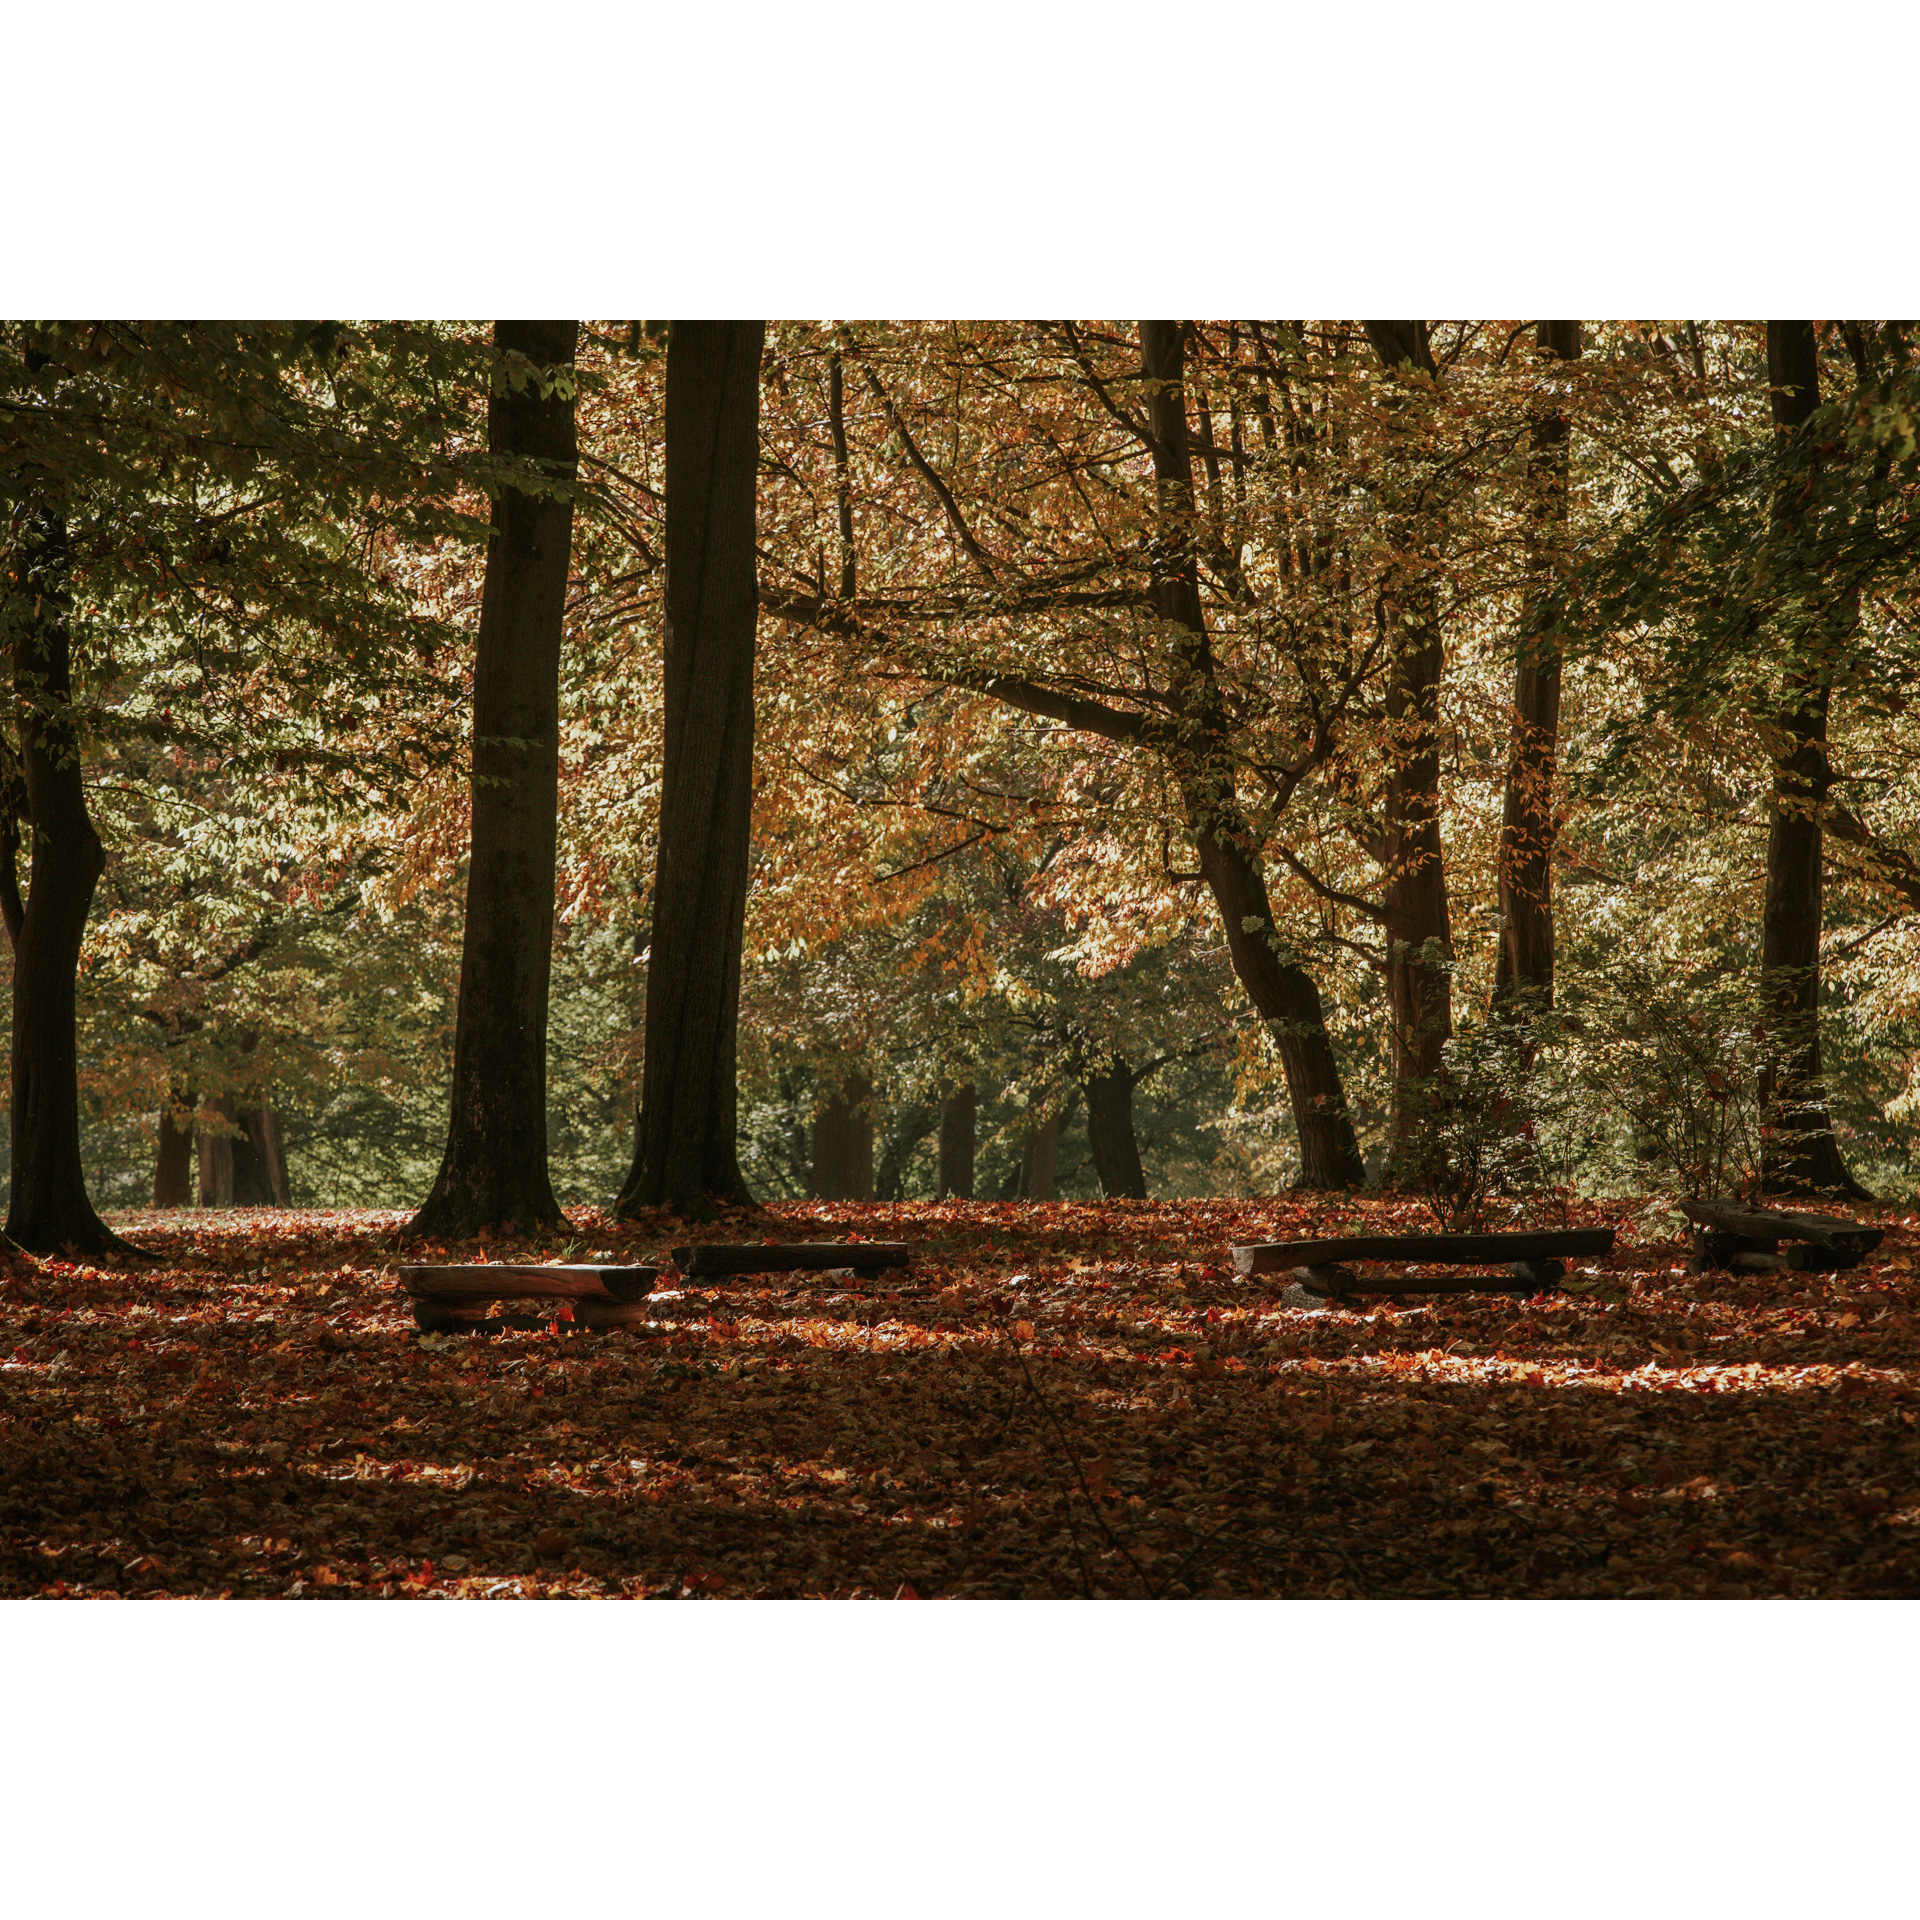 Polana w lesie liściastym, wokół wysokie drzewa, podłoże całkowicie pokryte brązowymi liśćmi, na środku miejsce na ognisko otoczone niskimi, drewnianymi ławkami bez oparć